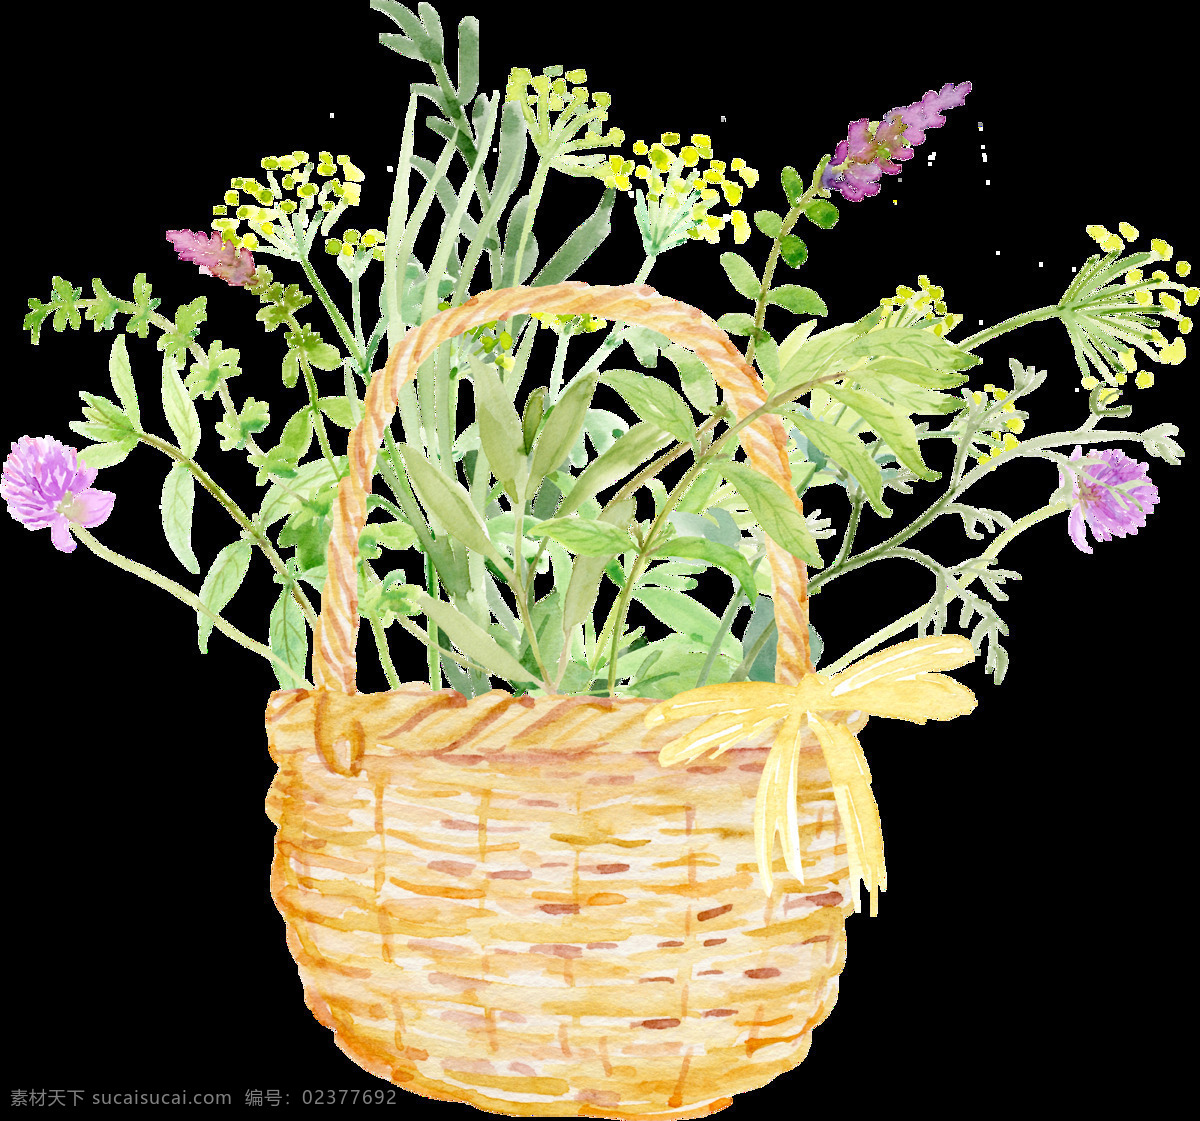 竹篮 花卉 卡通 透明 装饰 设计素材 背景素材